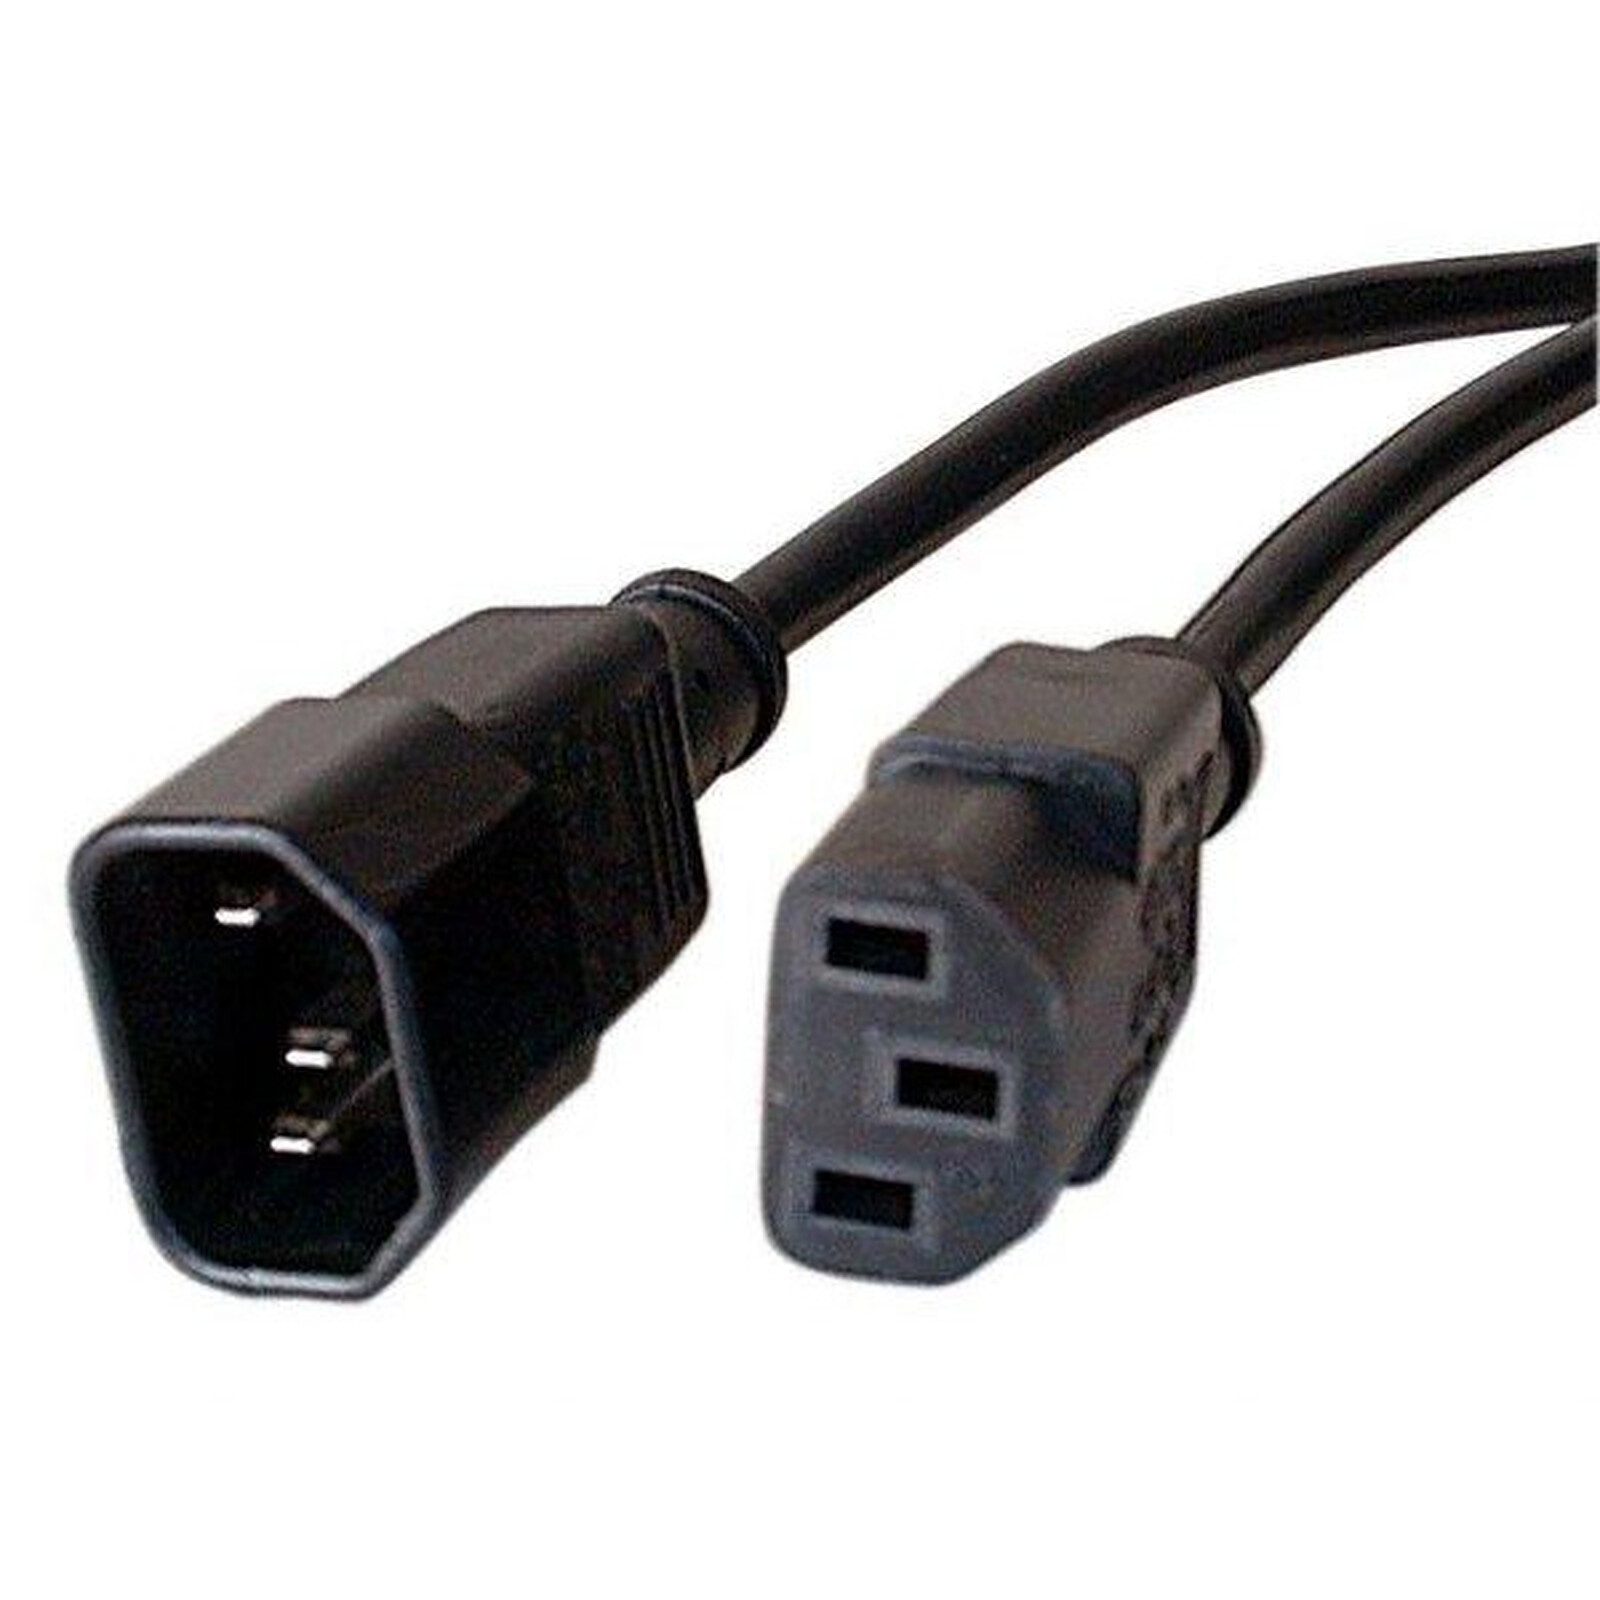 Rallonge d'alimentation pour PC, moniteur et onduleur (1.8 m) - (coloris  noir) - Câble Secteur - Garantie 3 ans LDLC